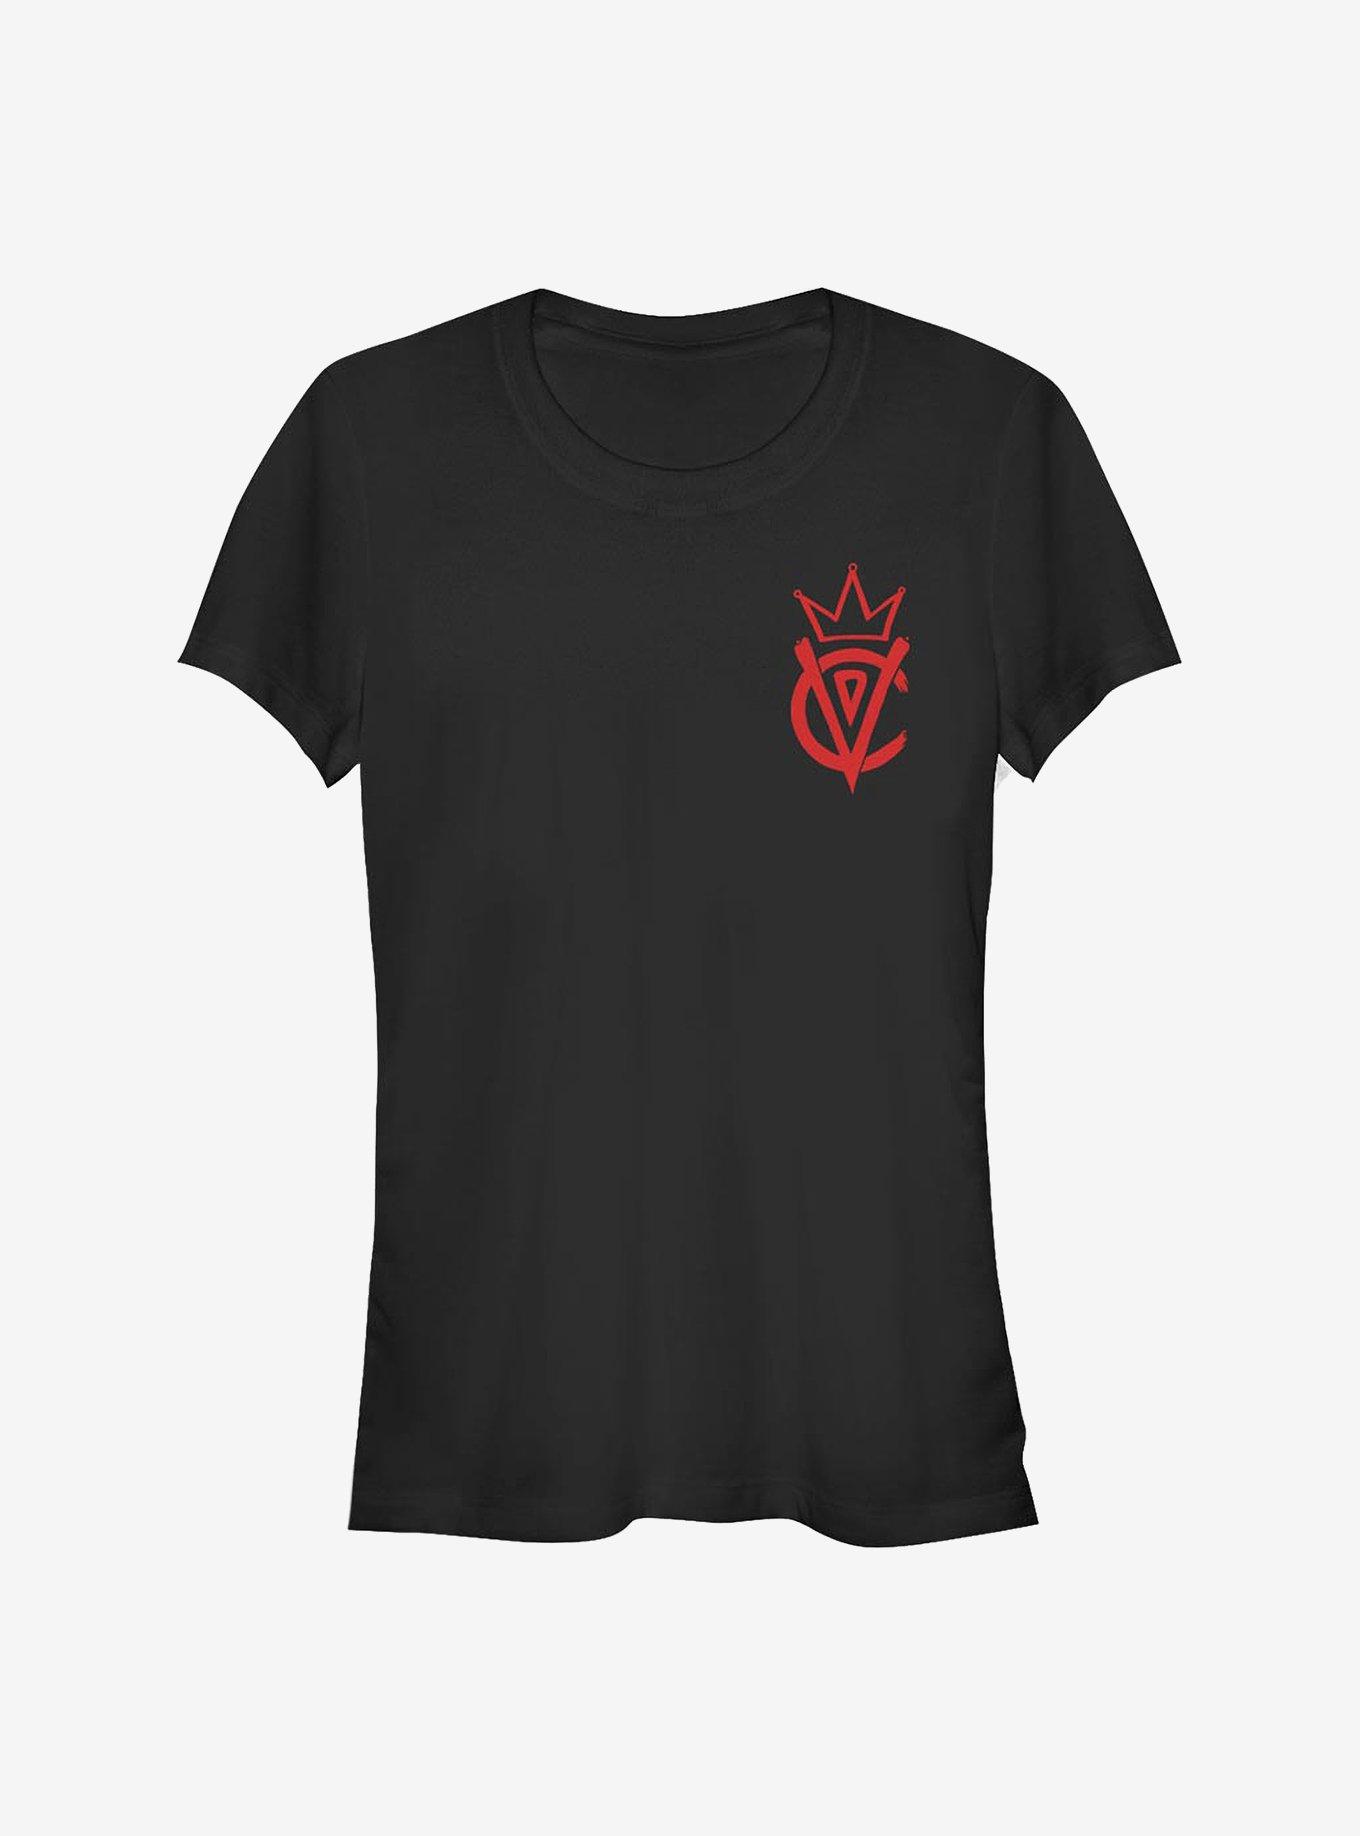 Disney Cruella Emblem Girls T-Shirt, BLACK, hi-res